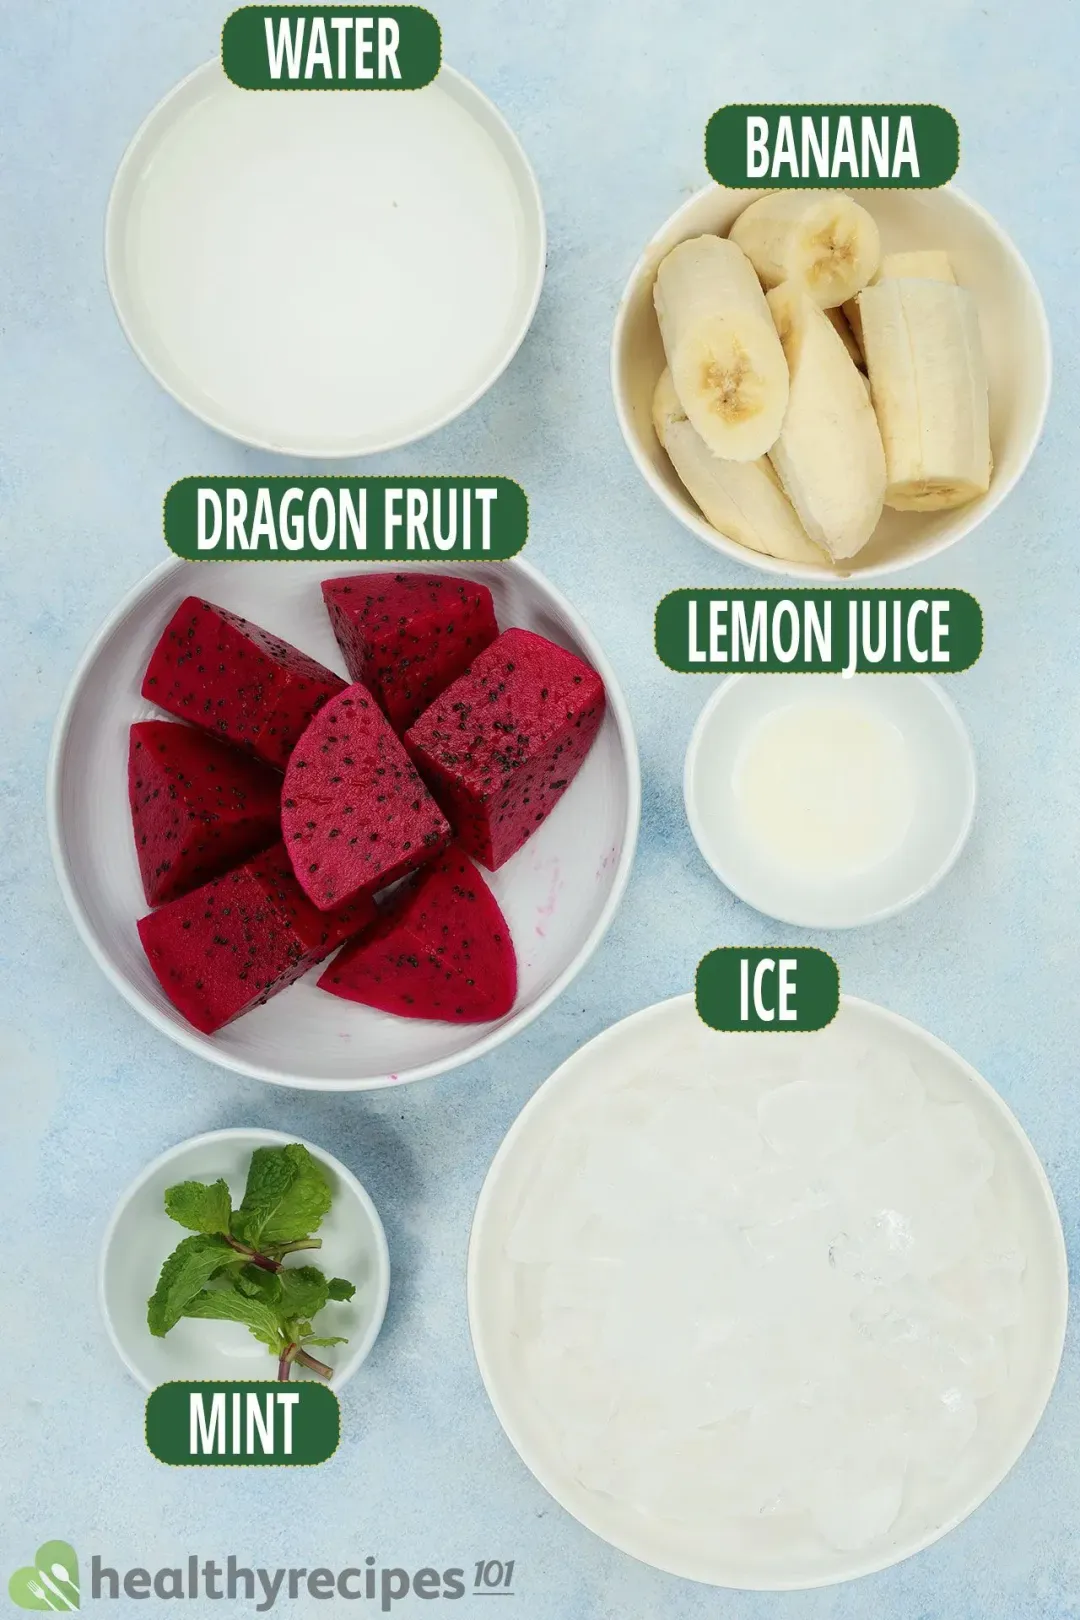 Ingredients for Dragon Fruit Banana Smoothie